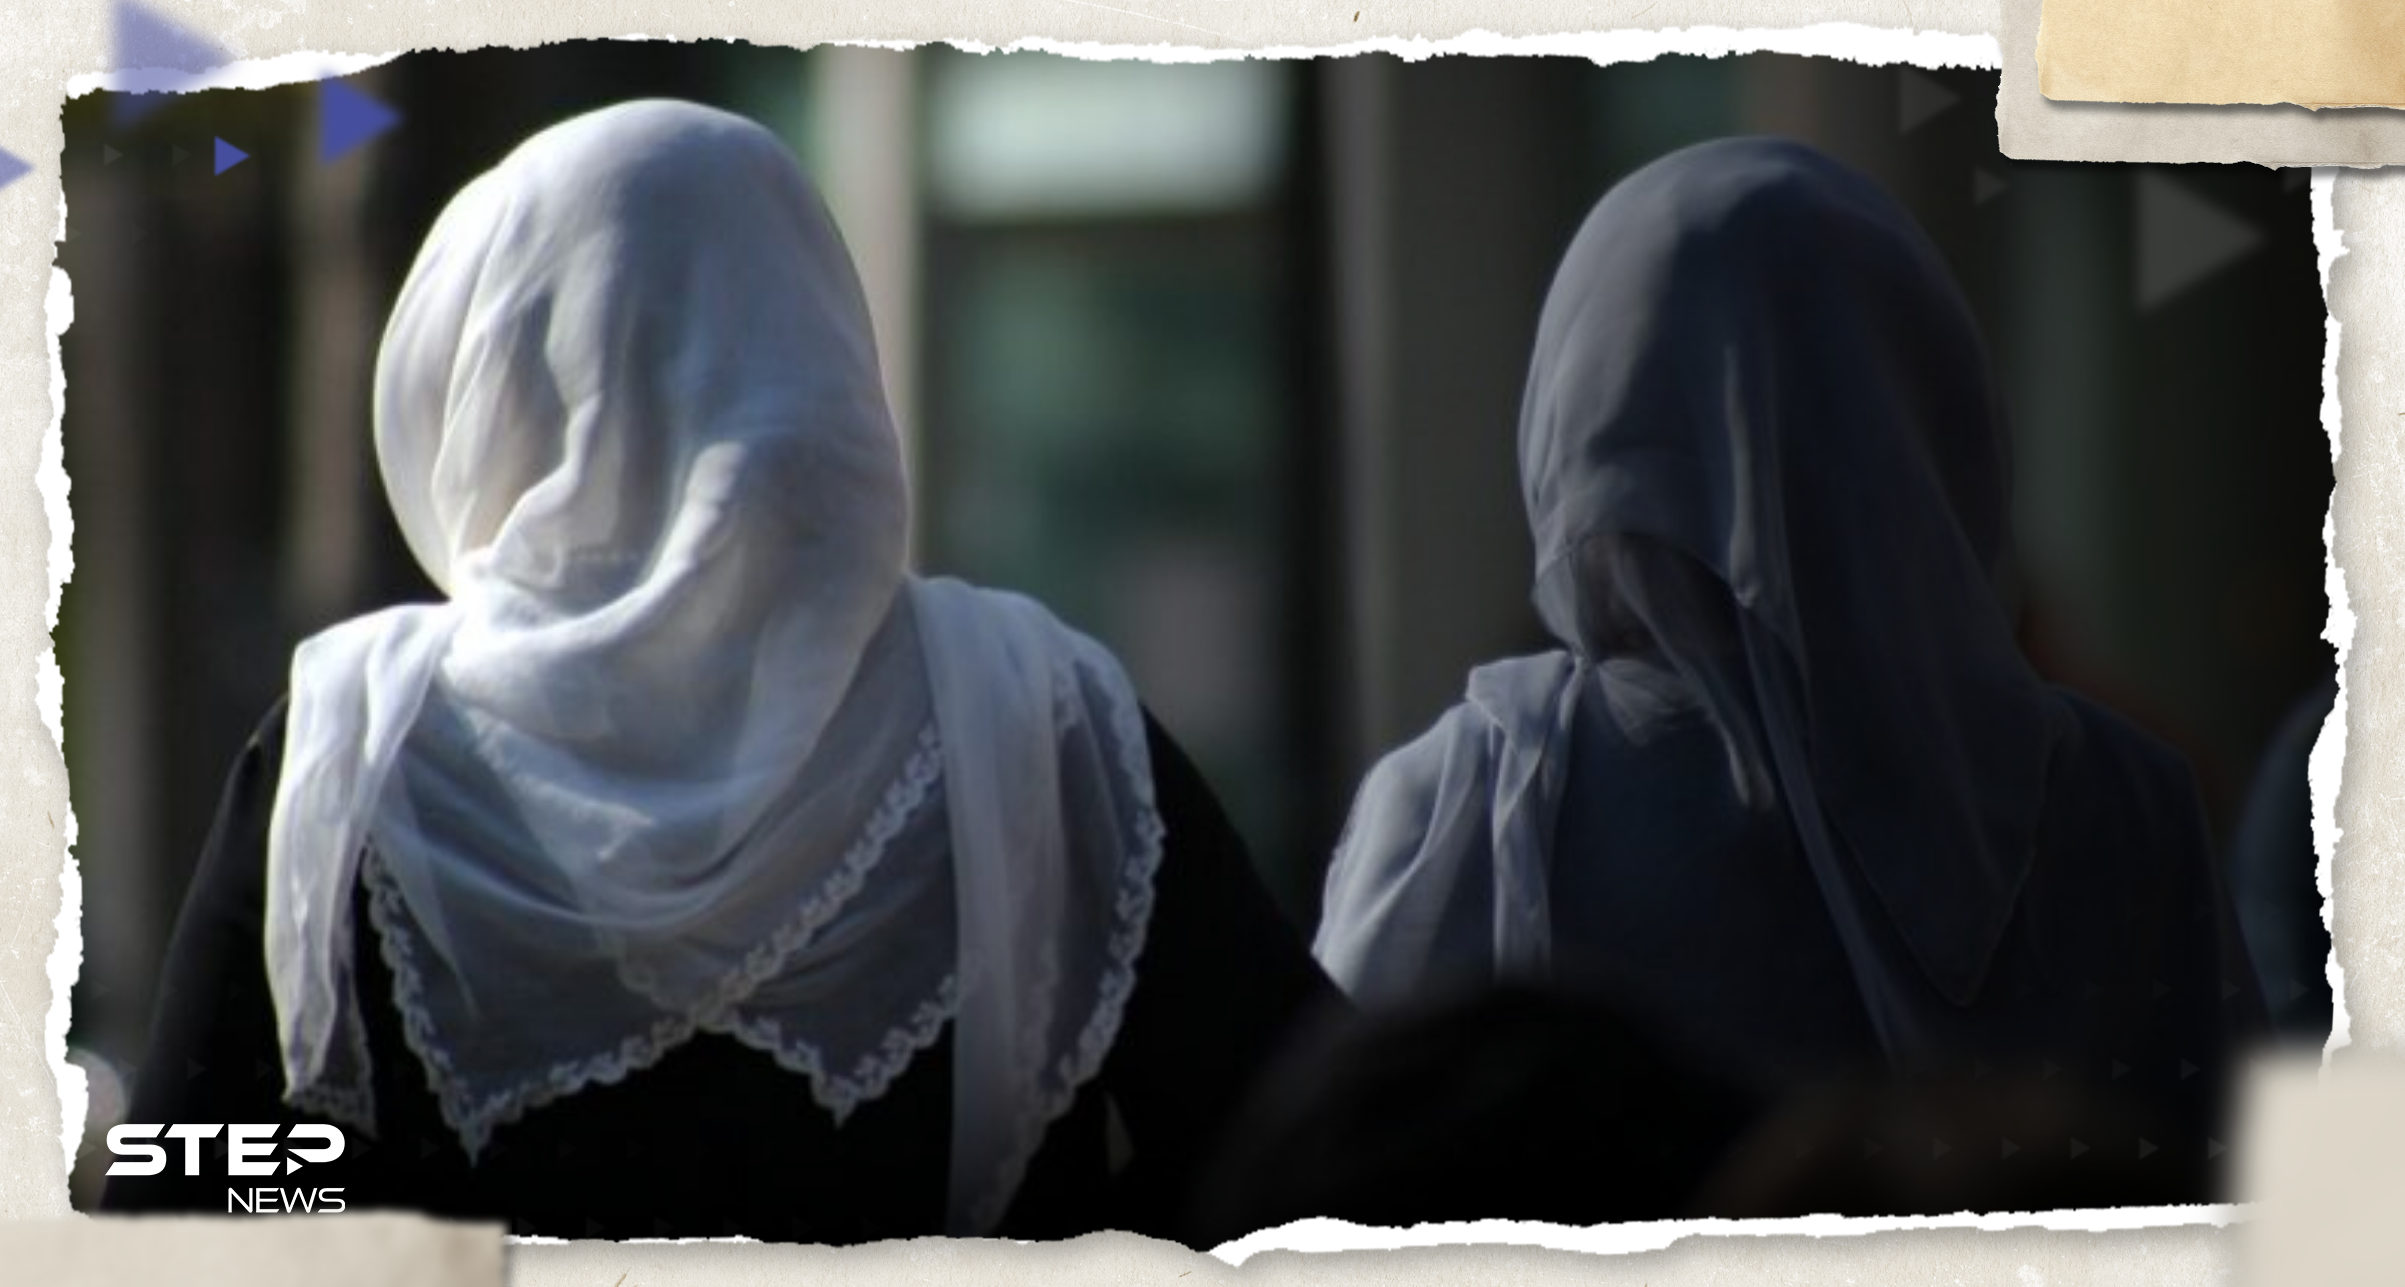 عقاب "غير متوقع" من مدرسة إندونيسية لفتيات بسبب الحجاب يثير الجدل